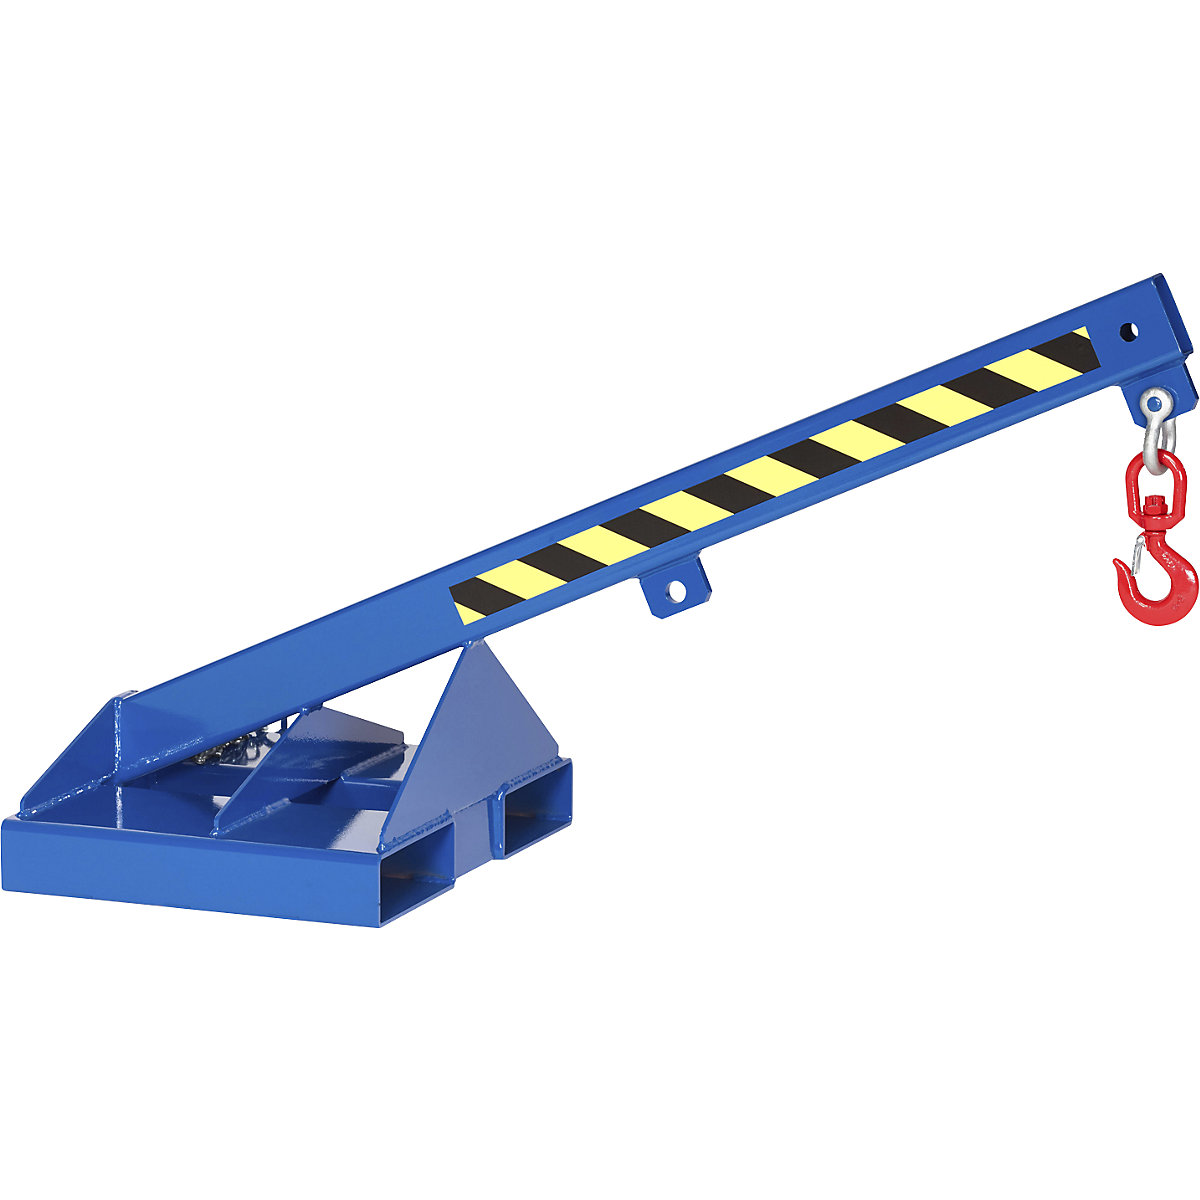 Brazo de carga con gancho de carga giratorio, azul genciana RAL 5010, inclinación 25°, carga máx. 1000 kg-6